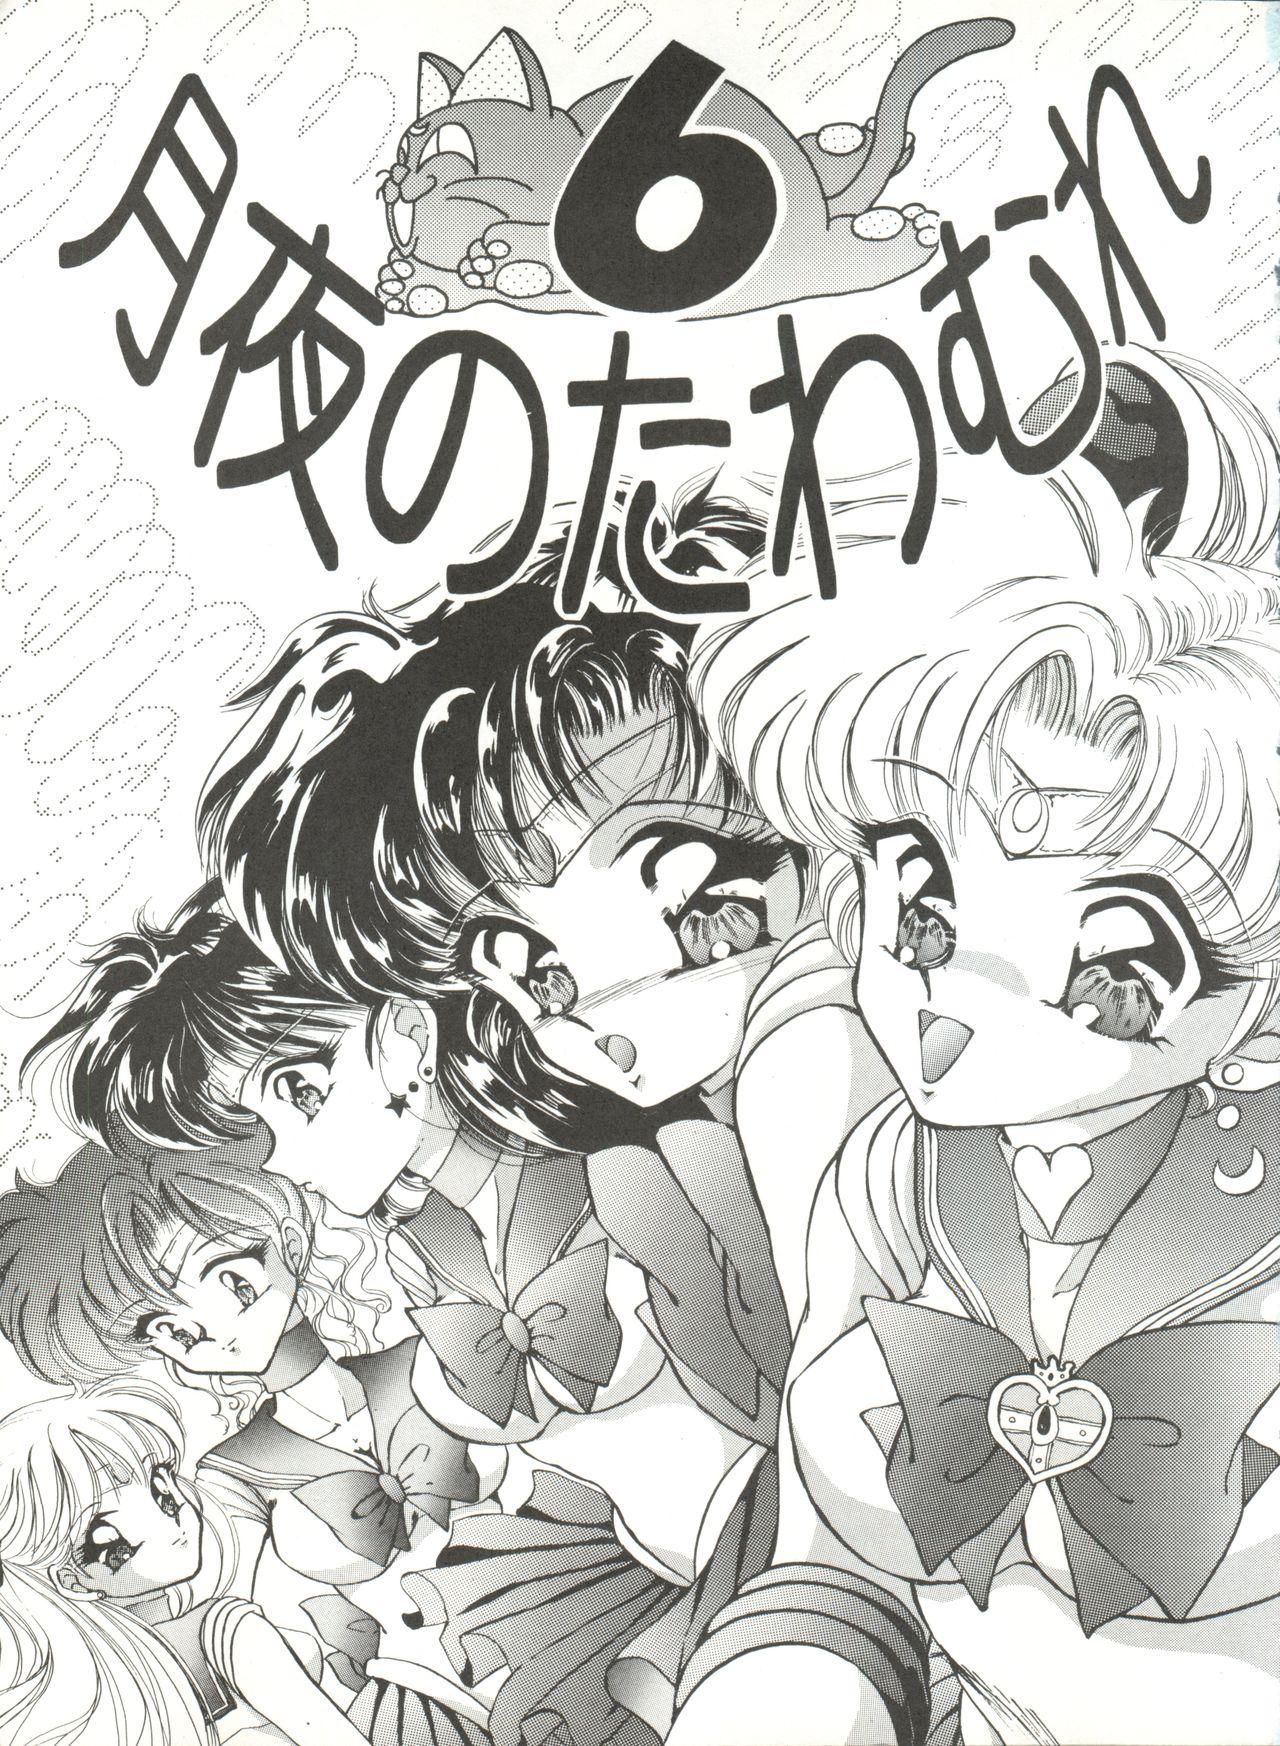 Young Tits Tsukiyo no Tawamure 6 - Sailor moon Guys - Page 3